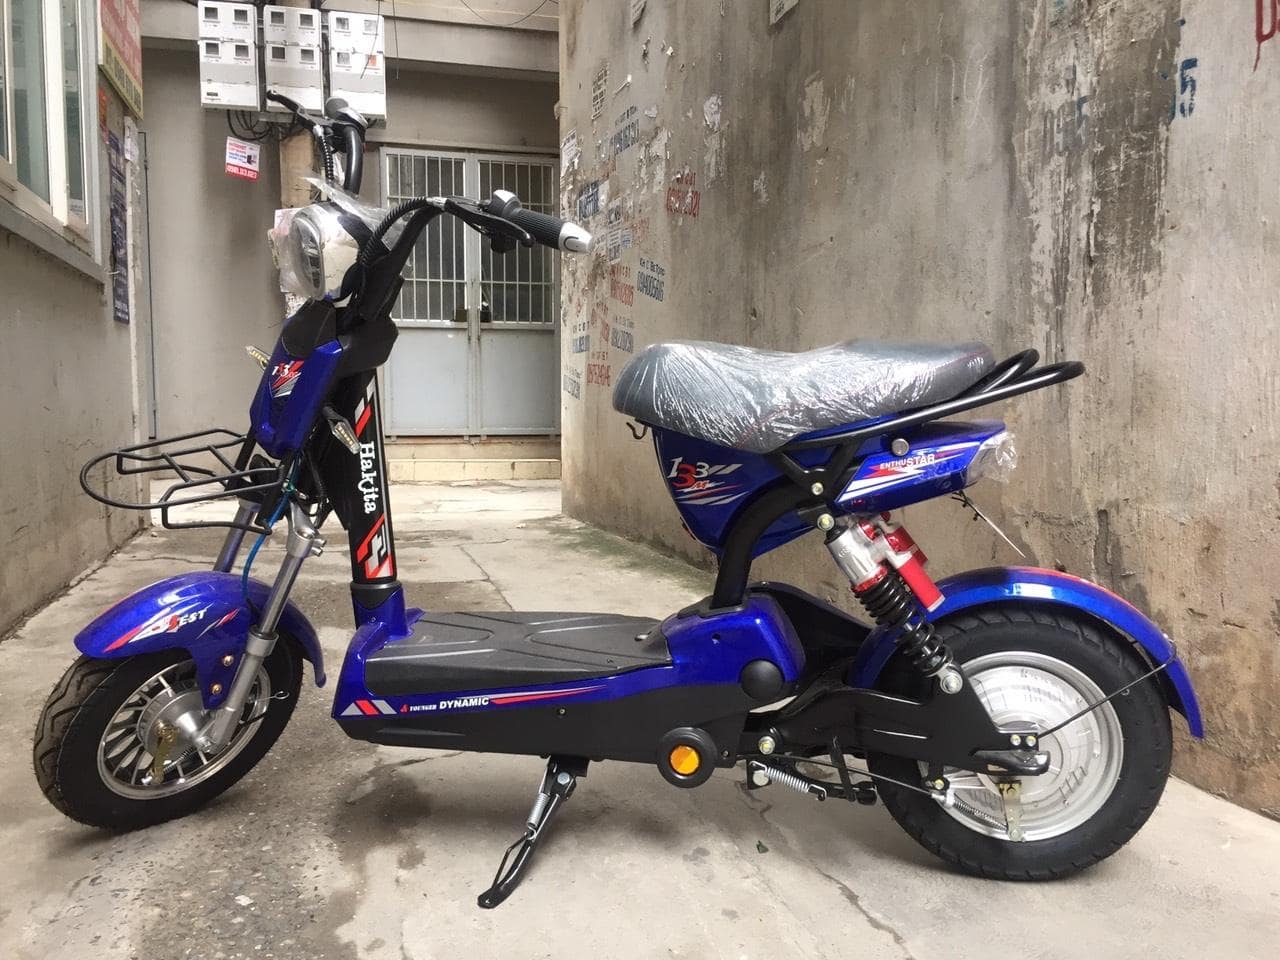 Mua bán xe điện xe máy cũ tại Hà Nội 0969 22 88 90  Home  Facebook